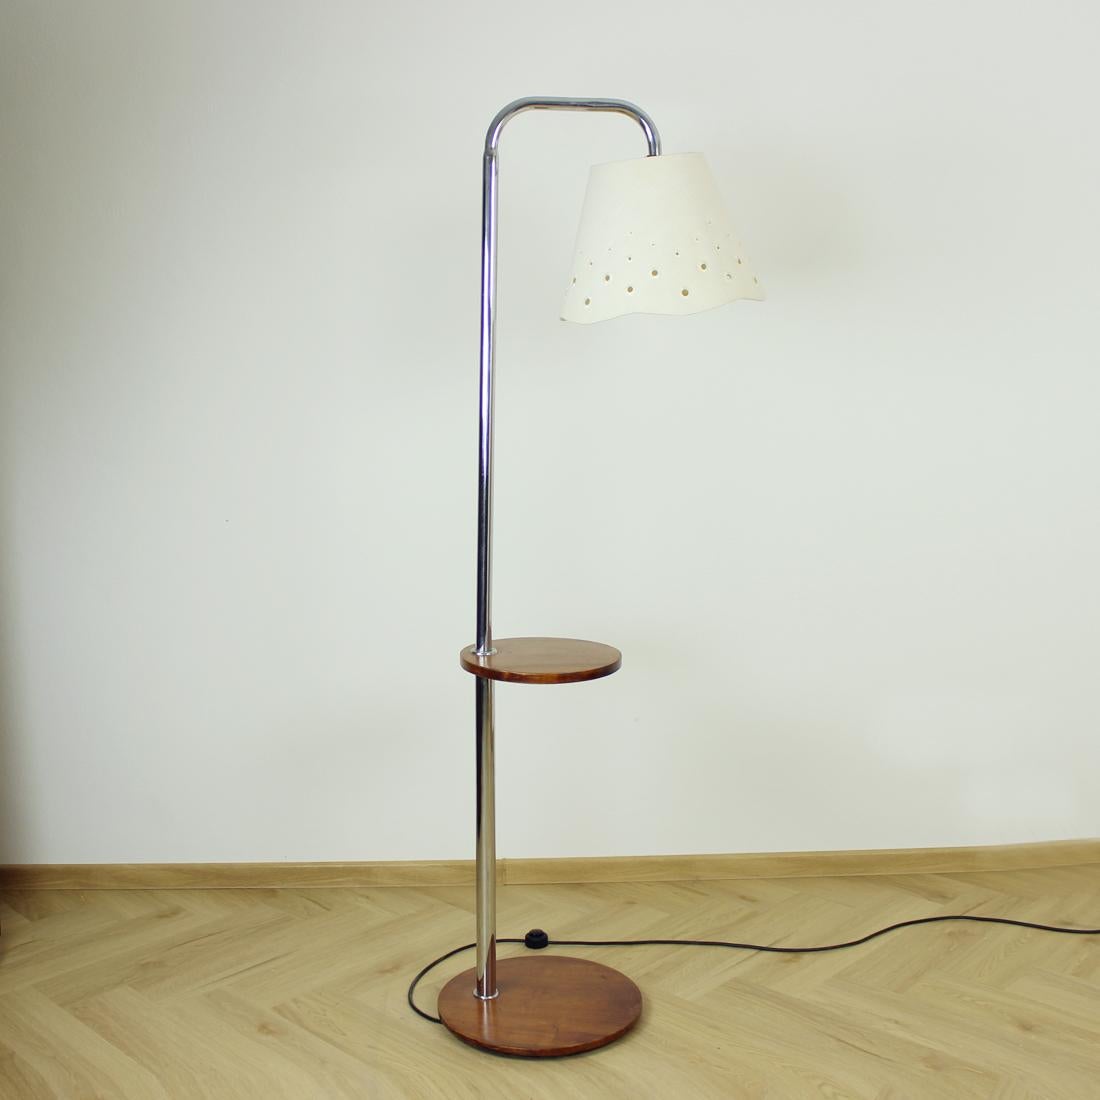 Magnifique lampadaire autoportant art déco produit par Up&Up Zavody en Tchécoslovaquie, conçu par Jindrich Halabala. La lampe repose sur une simple base en bois qui supporte une solide tige en acier chromé. Il y a une étagère en bois sur la lampe.